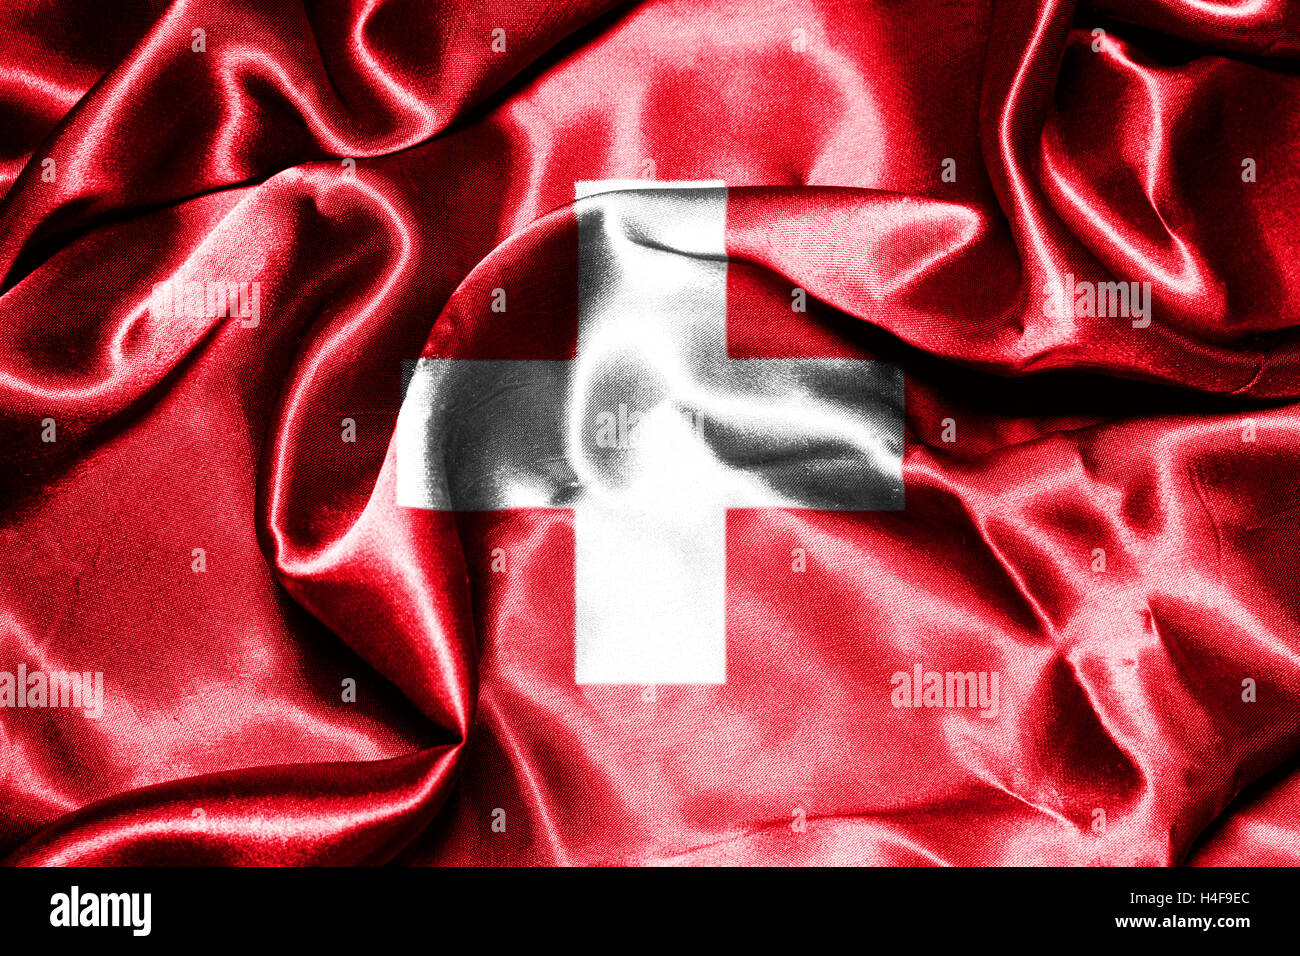 Switzerland National Flag Stock Photo